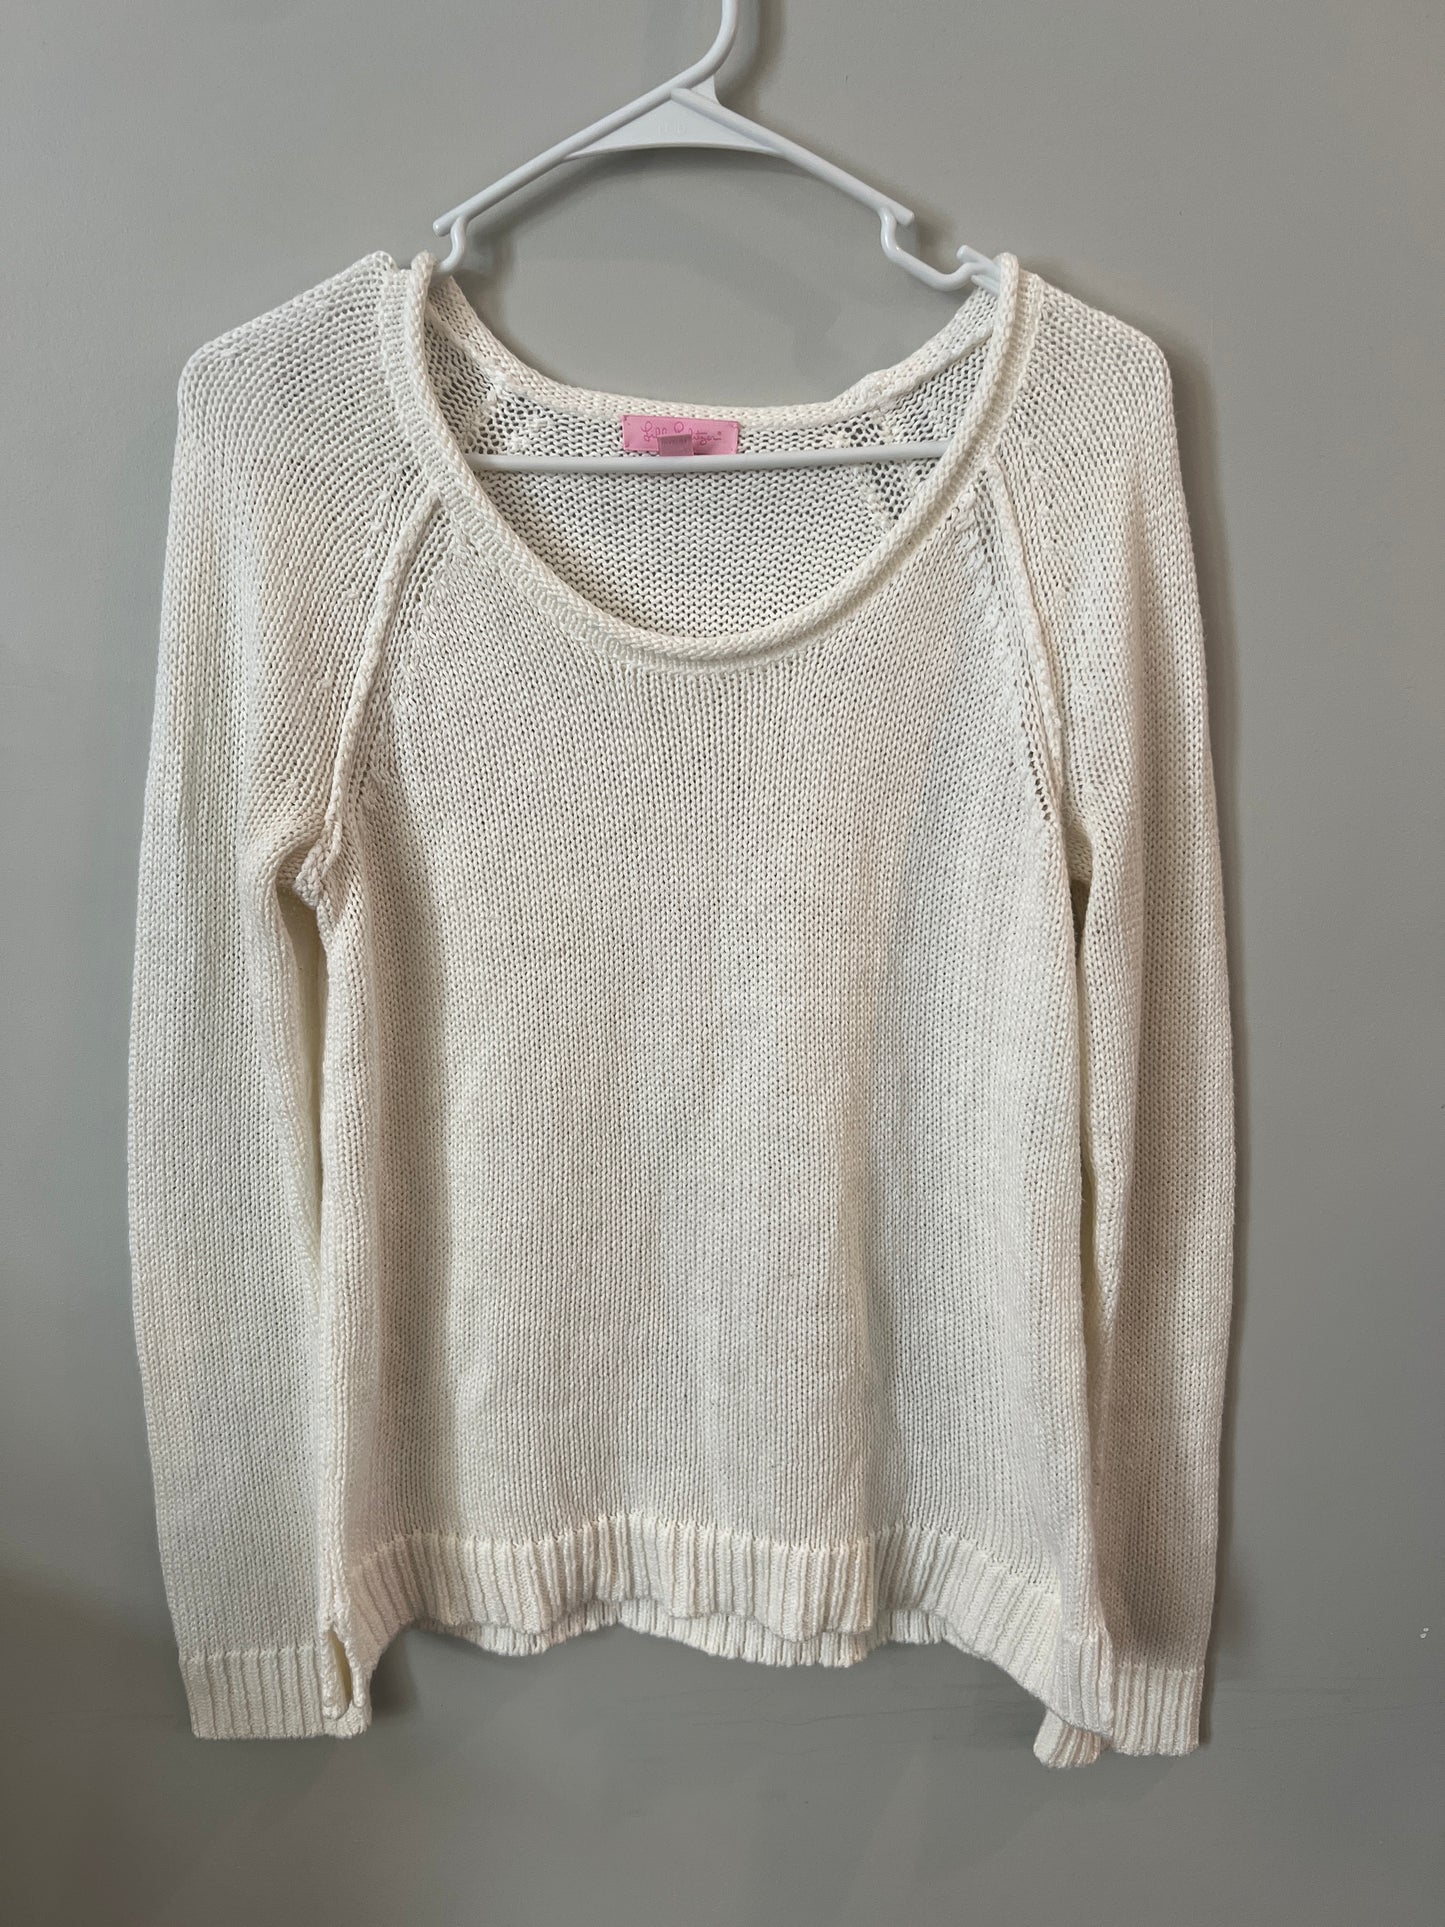 Women's M Lilly Pulitzer Cream Knit Sweater- PPU 45044 (Liberty Twp)